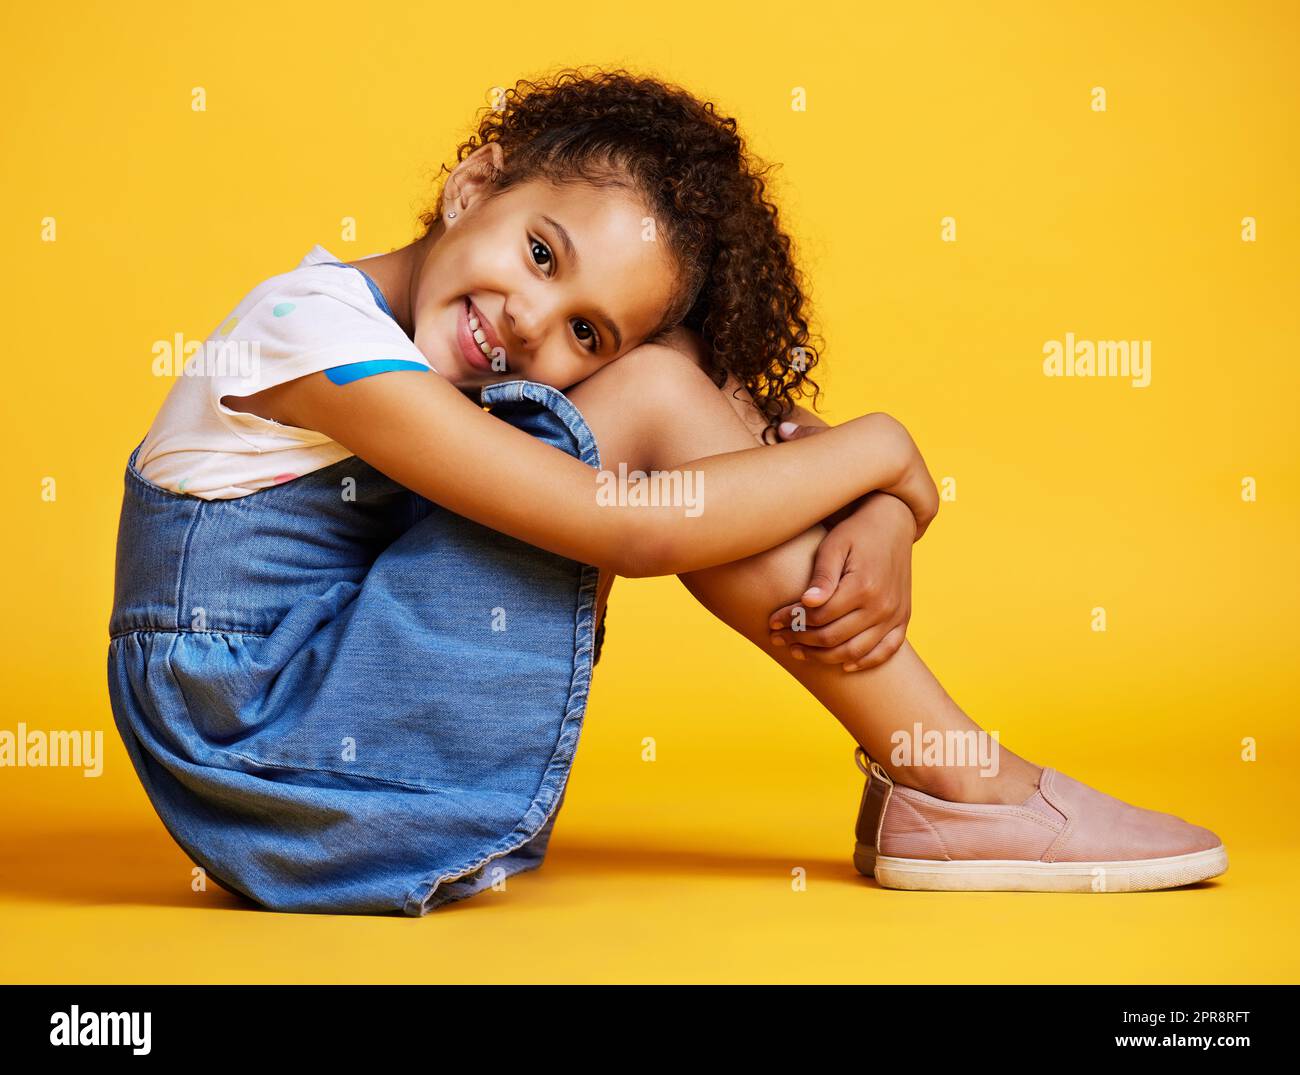 Studio-Porträt gemischtes Rassenmädchen, das allein vor gelbem Hintergrund sitzt. Süßes hispanisches Kind, das drinnen posiert. Fröhliches und süßes Kind, das lächelt und sorgenfrei aussieht in lässiger Kleidung Stockfoto